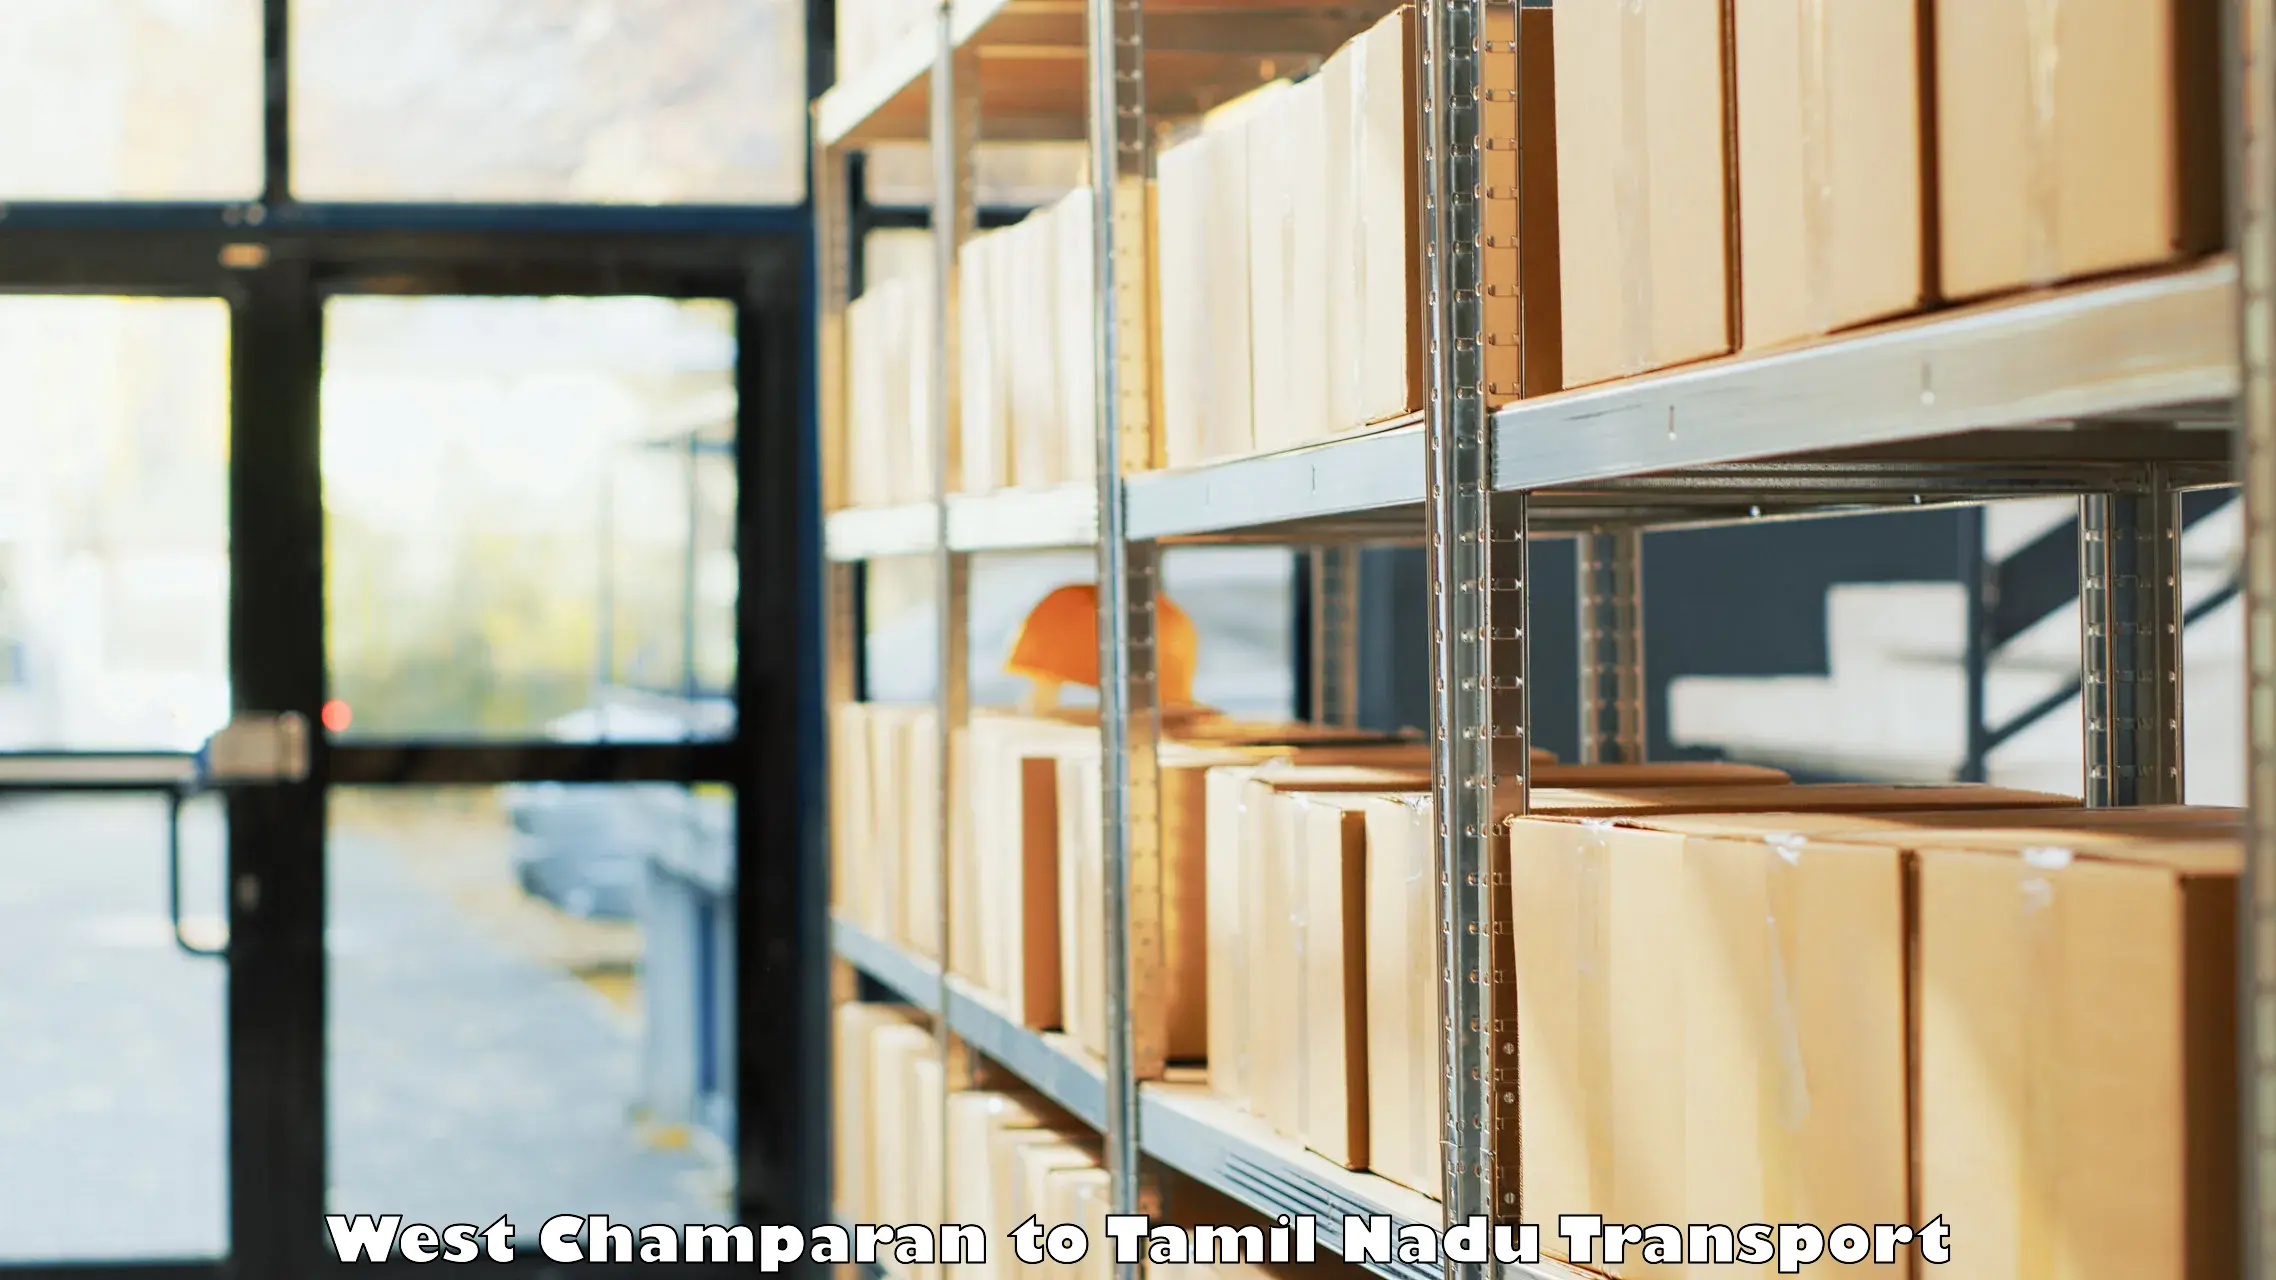 Furniture transport service West Champaran to Sholinghur